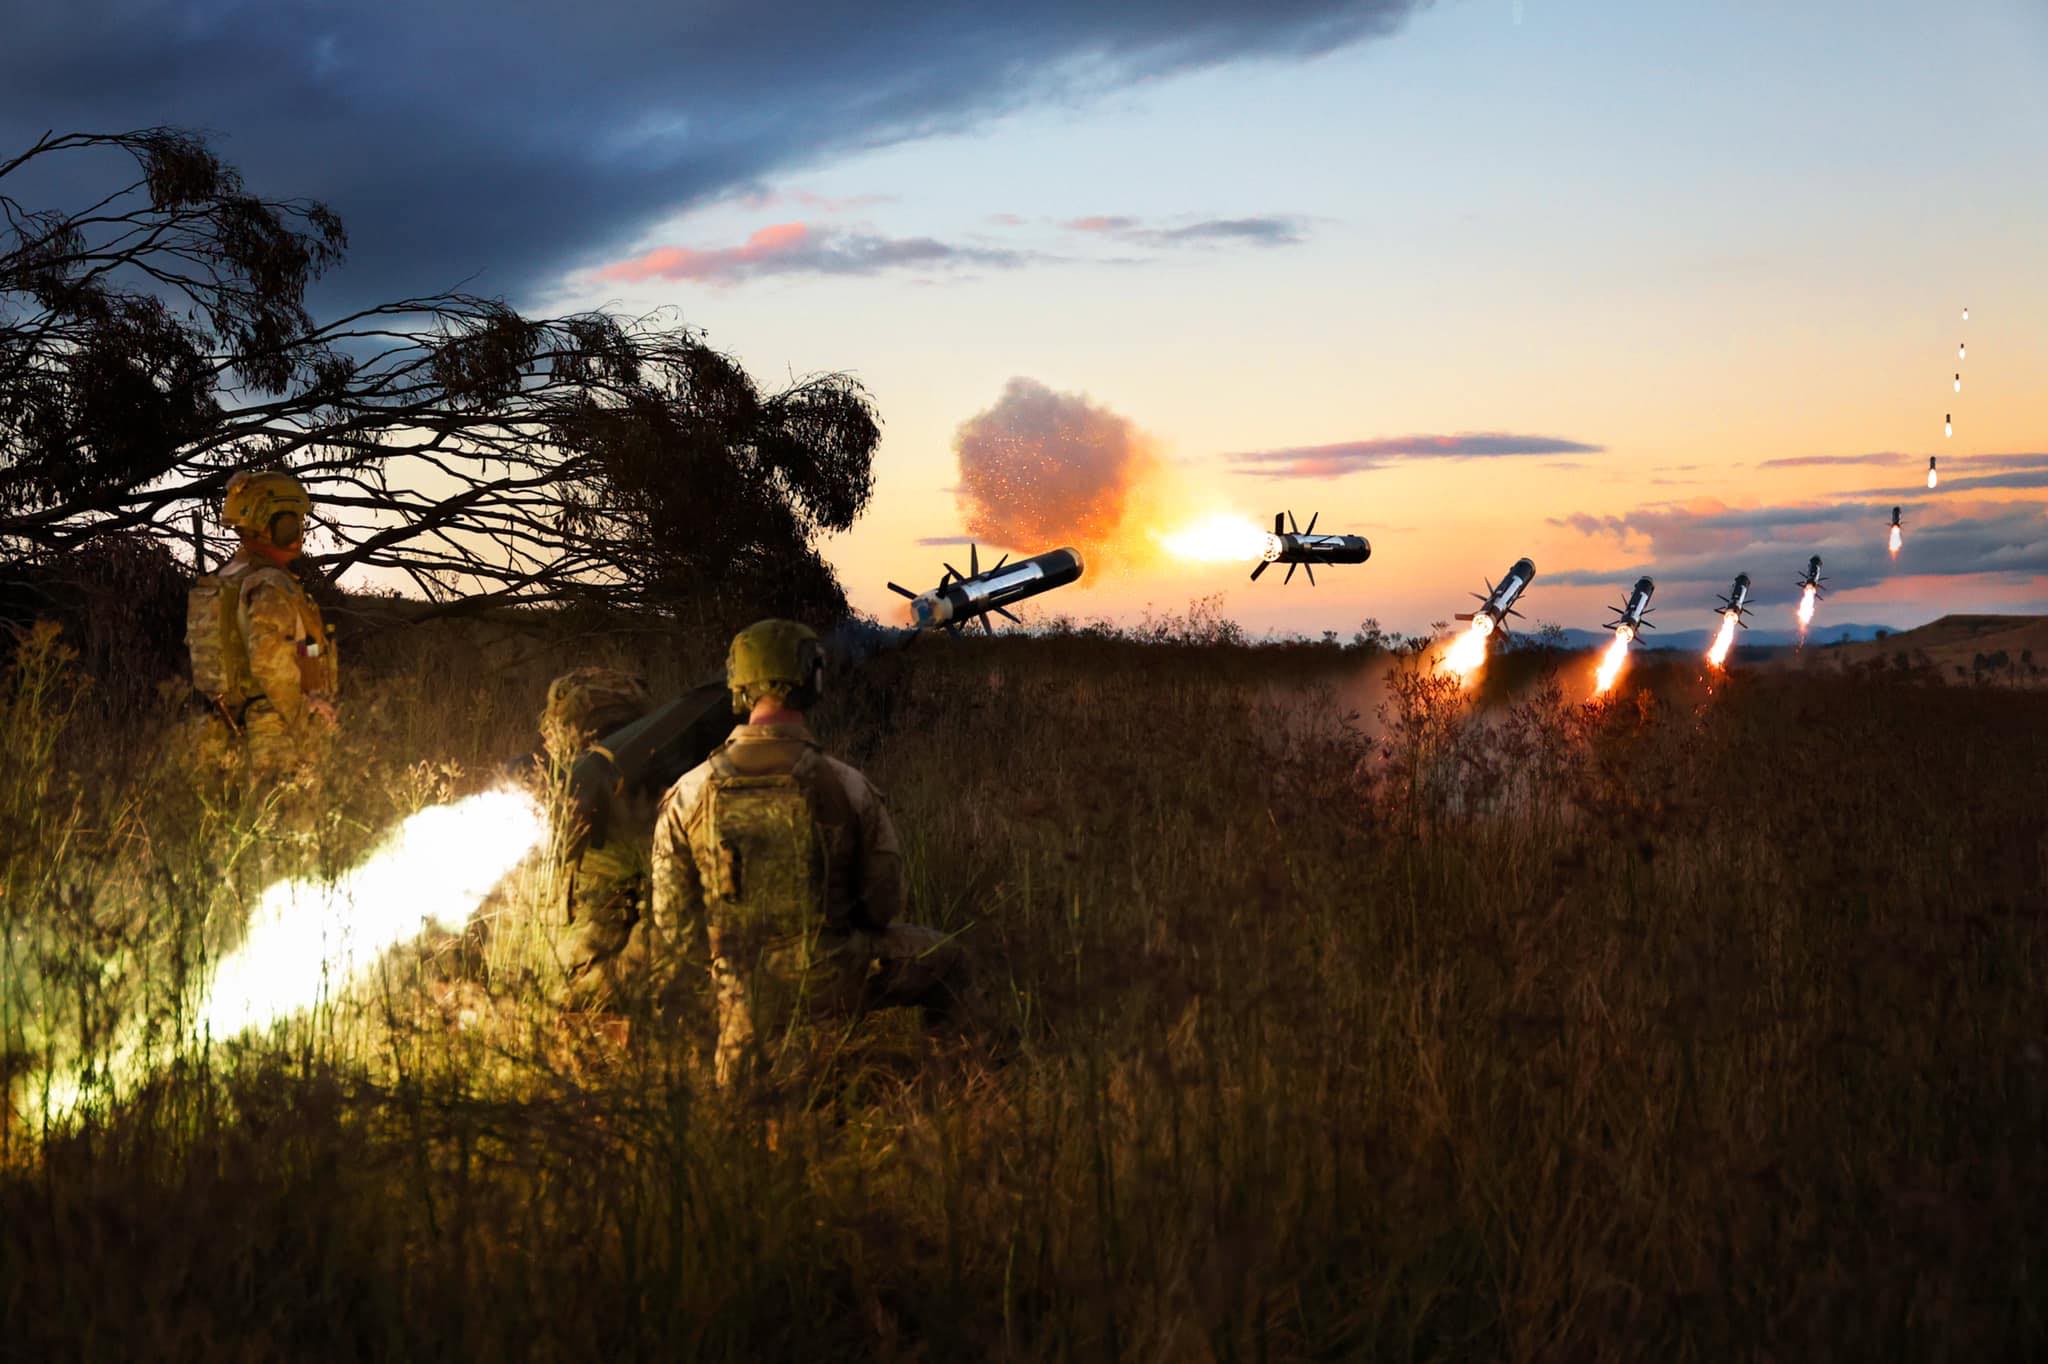 Фото с большой выдержкой, на котором австралийские солдаты совершают выстрел из FGM-148 Javelin, июнь 2022 г.